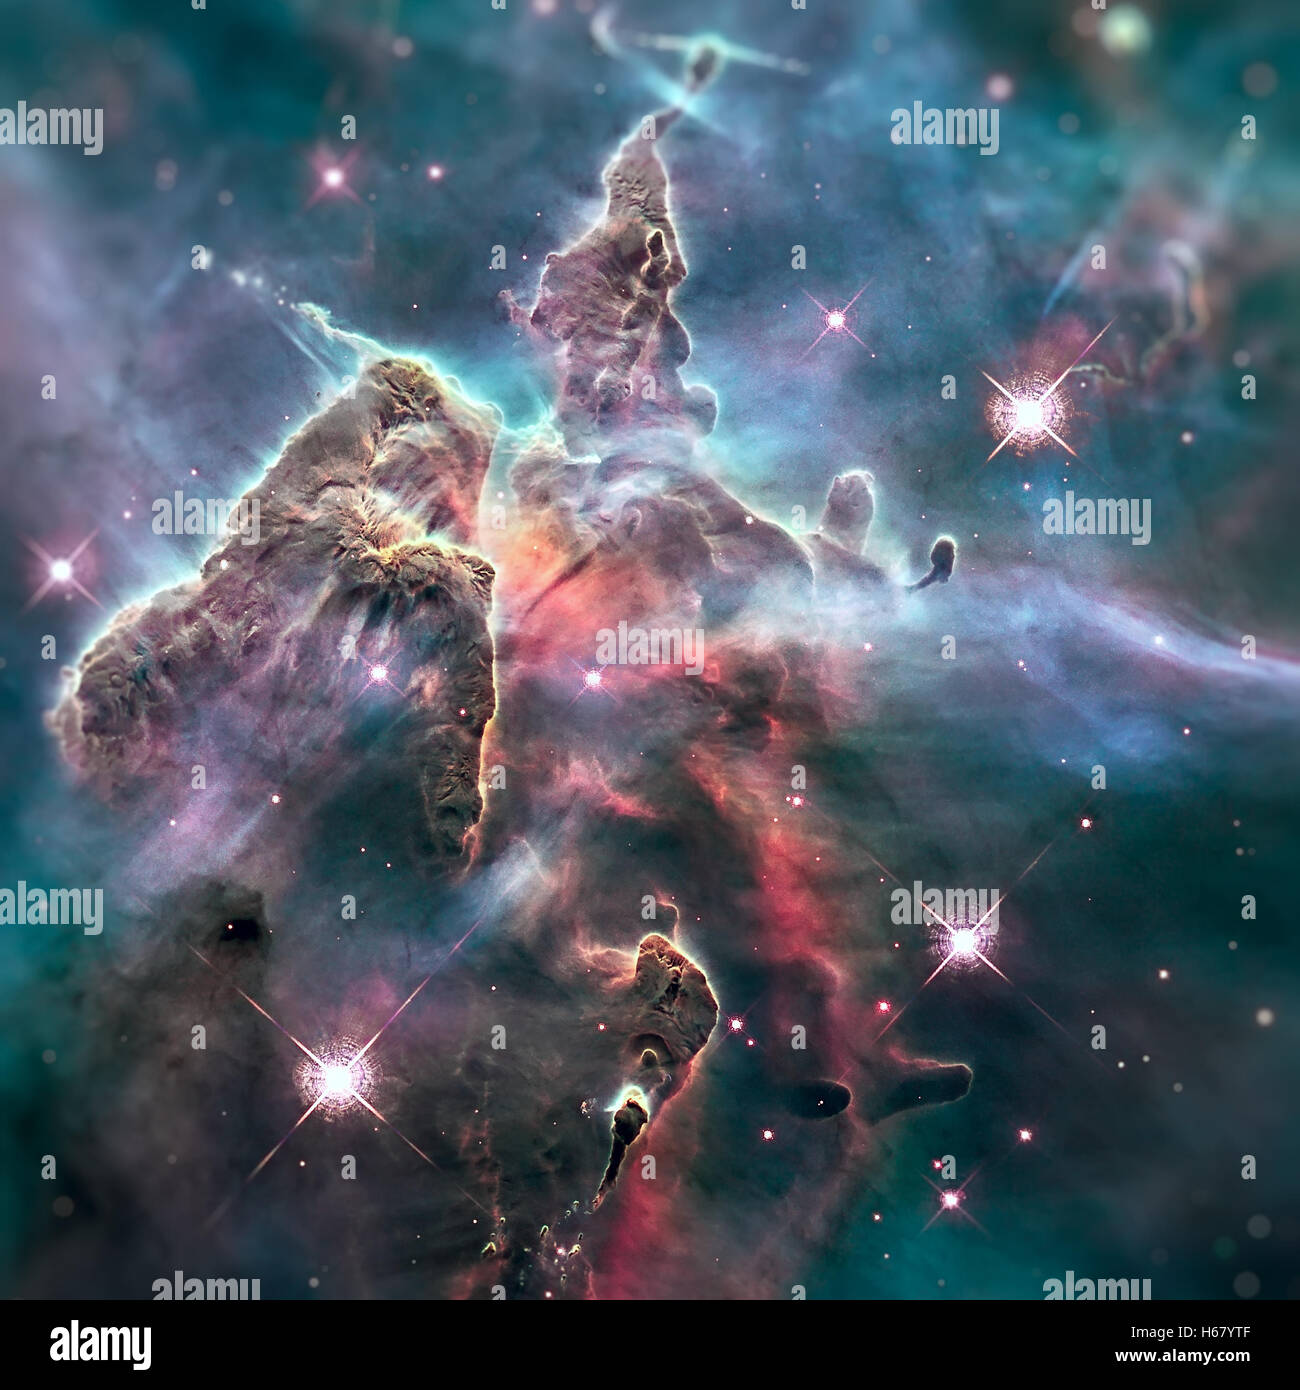 Mystic Mountain. Region in der Carina Nebula abgebildet, die das Hubble-weltraumteleskop. Elemente dieses Bild von der NASA eingerichtet. Stockfoto